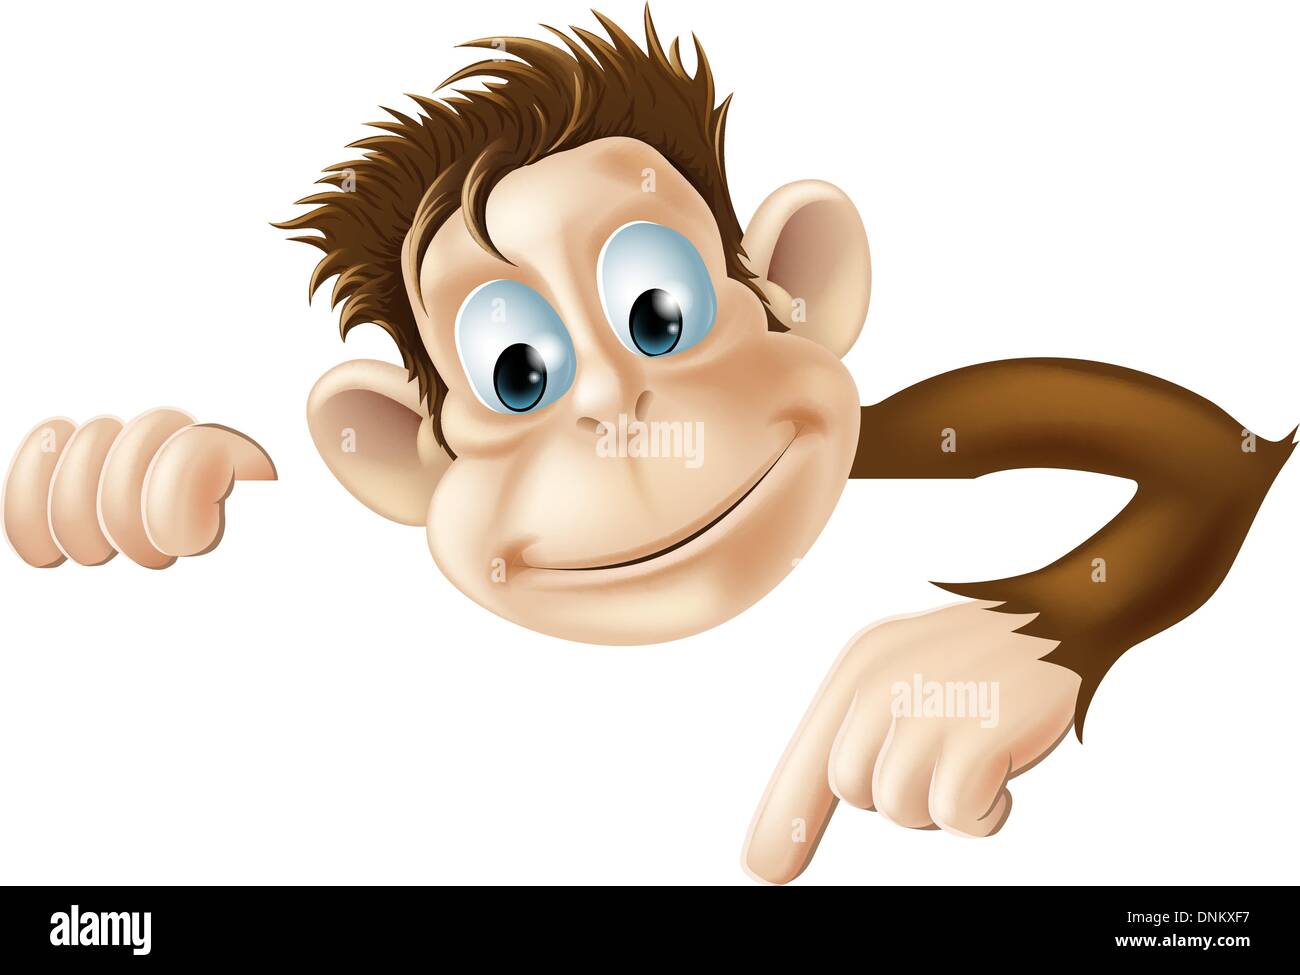 Una illustrazione di un cartoon carino monkey peeking round da dietro un segno e puntamento o che mostra ciò che si dice Illustrazione Vettoriale